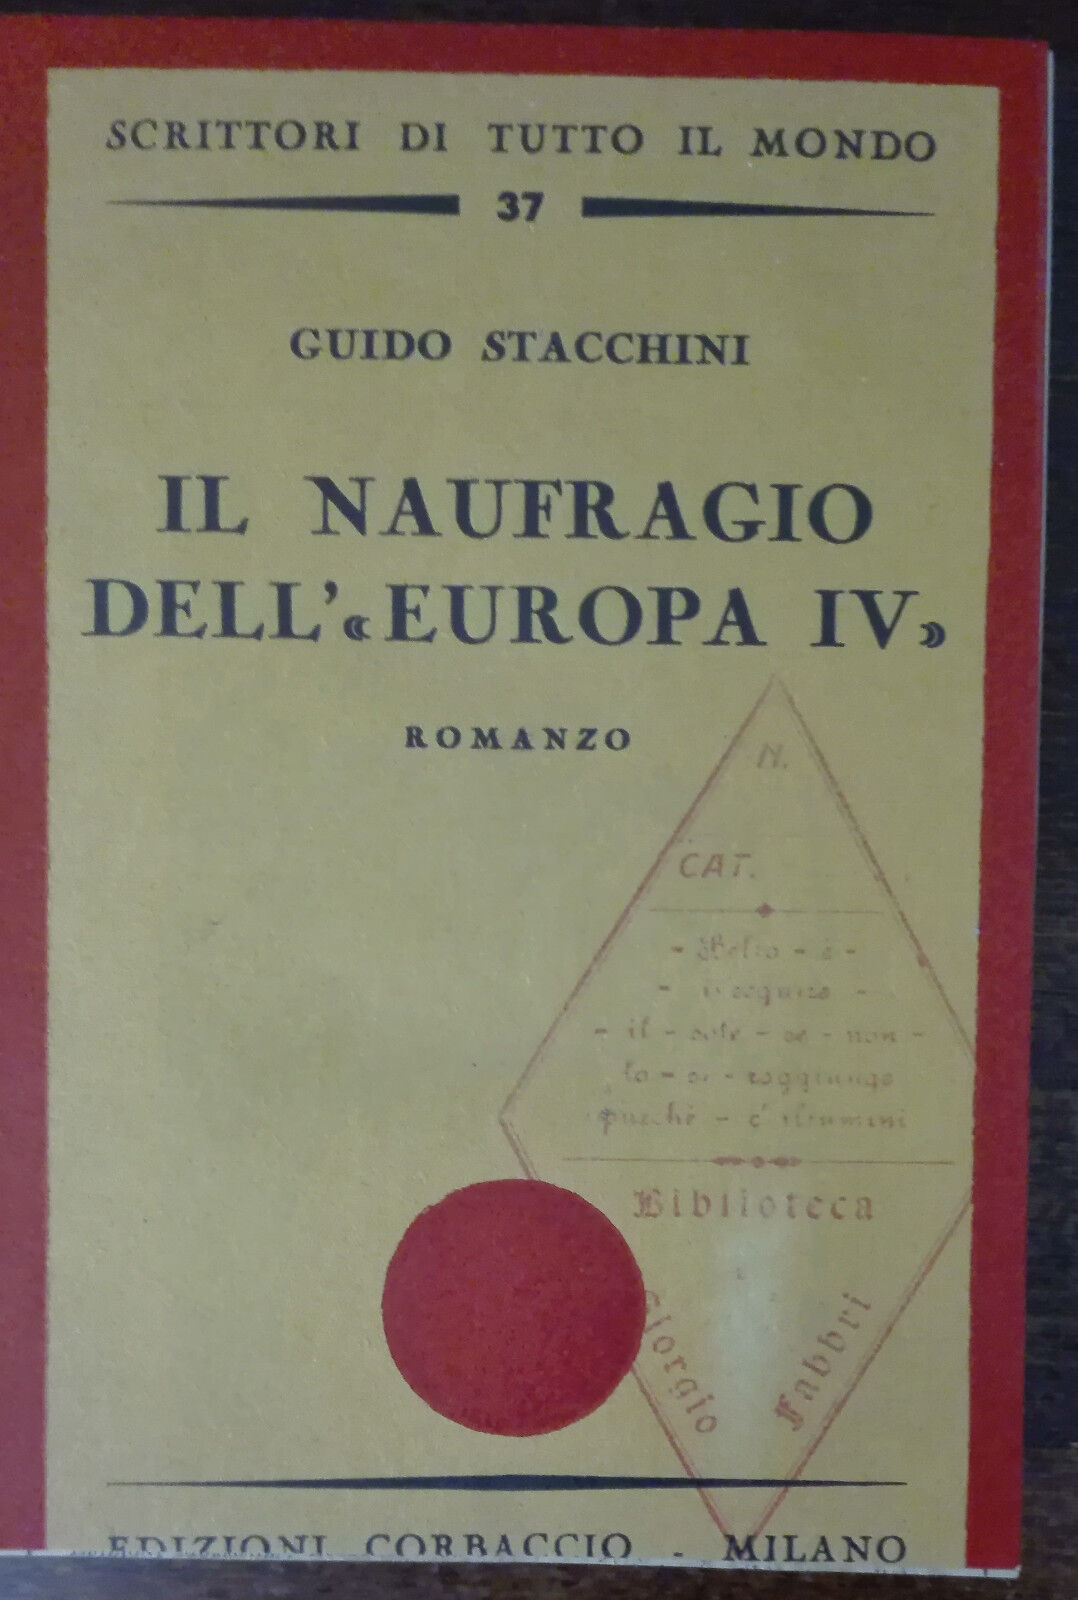 Il naufragio dell'Europa IV - Guido Stacchini - Corbaccio,1935 - A